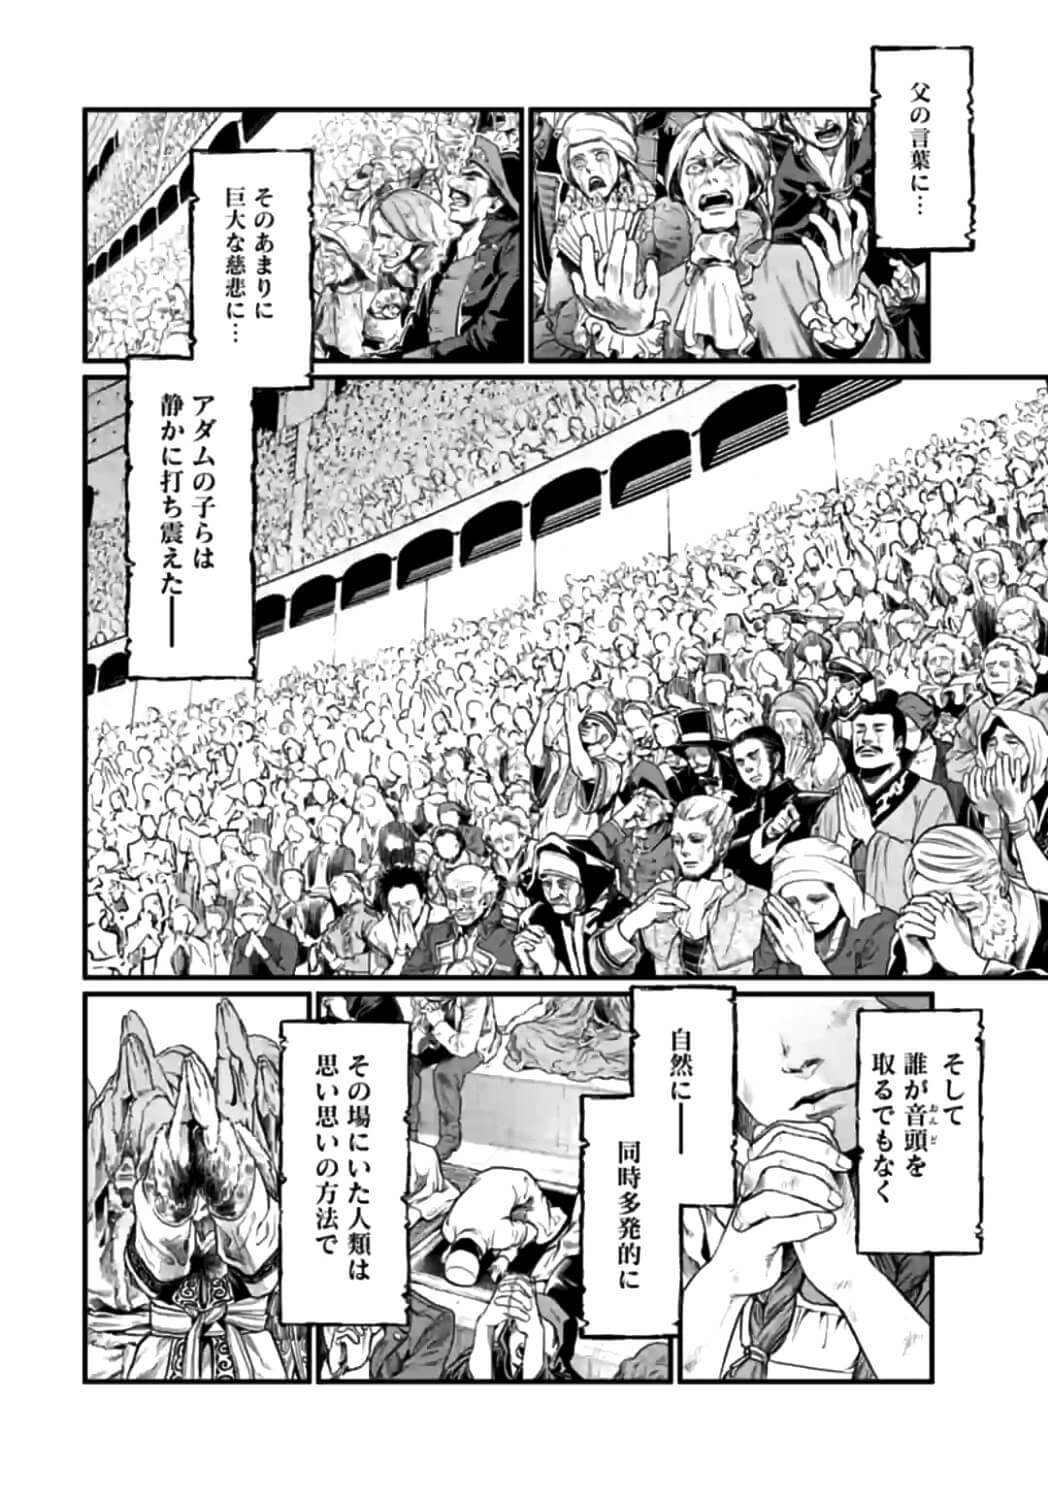 Shuumatsu no Valkyrie - Chapter 11 - Page 2